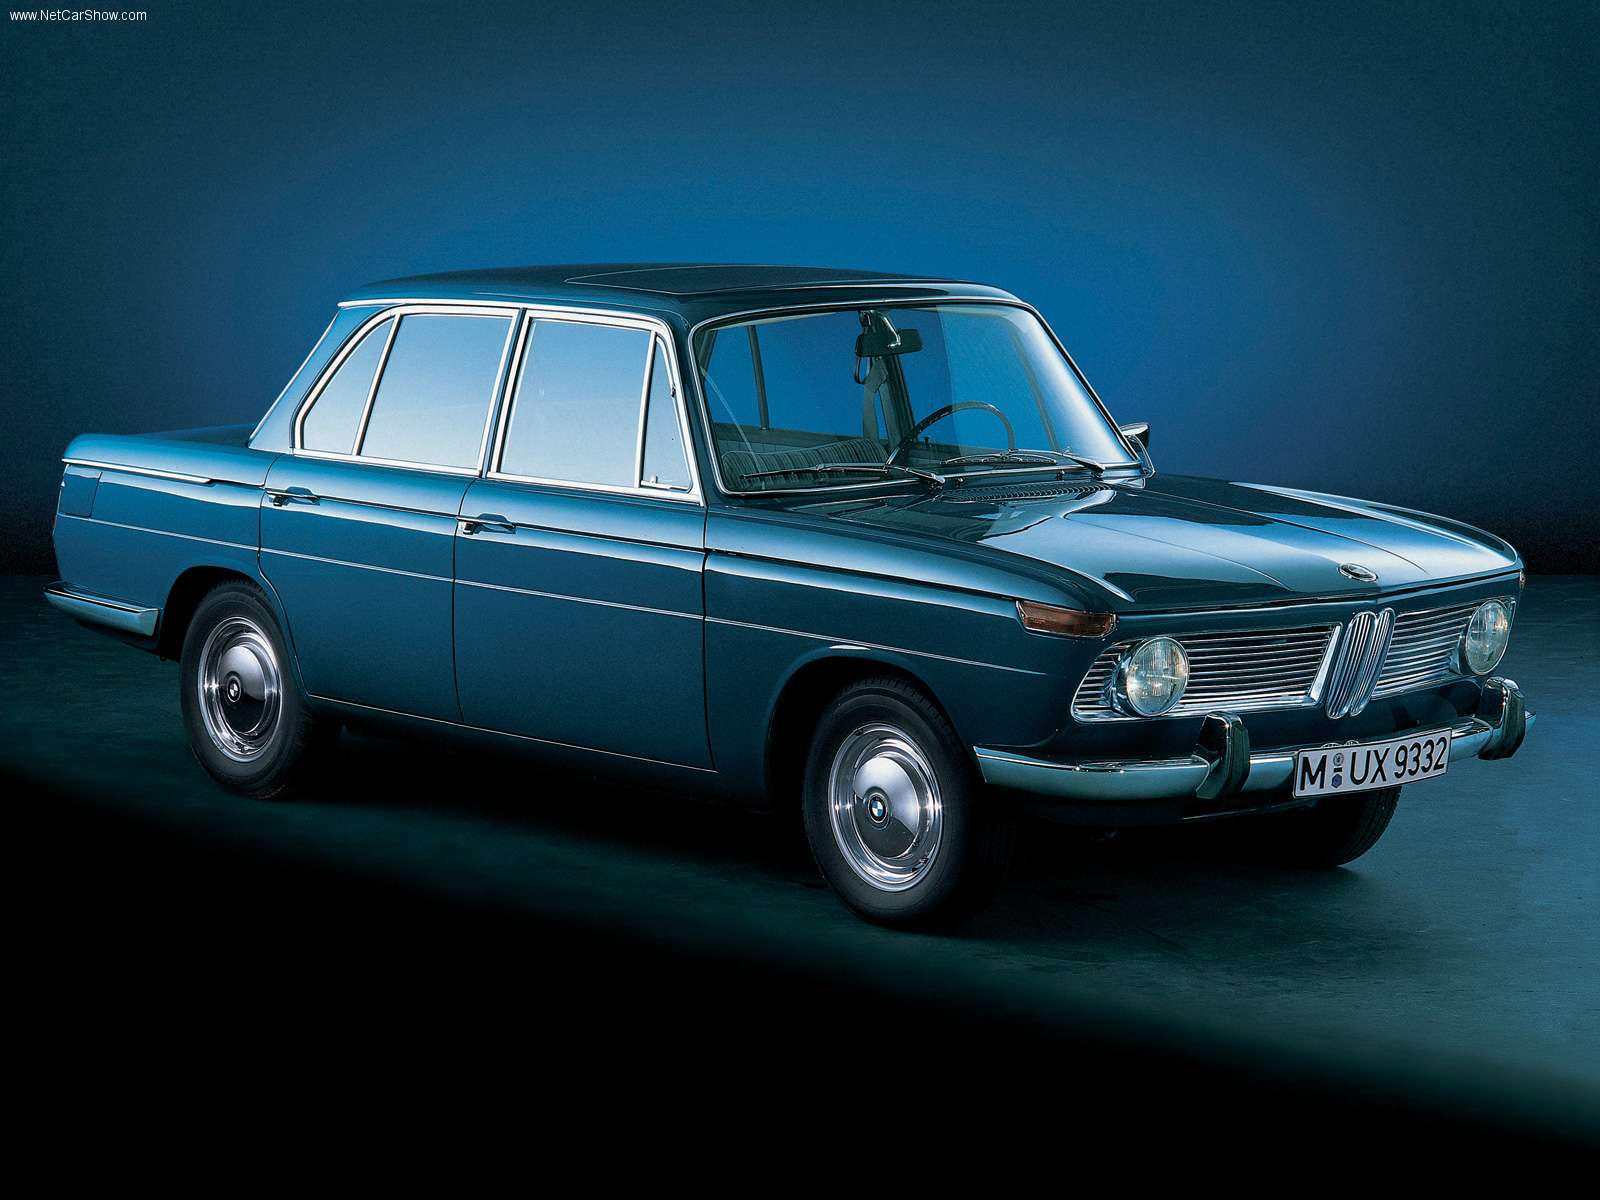 BIMMERIN - Historique des modèles BMW